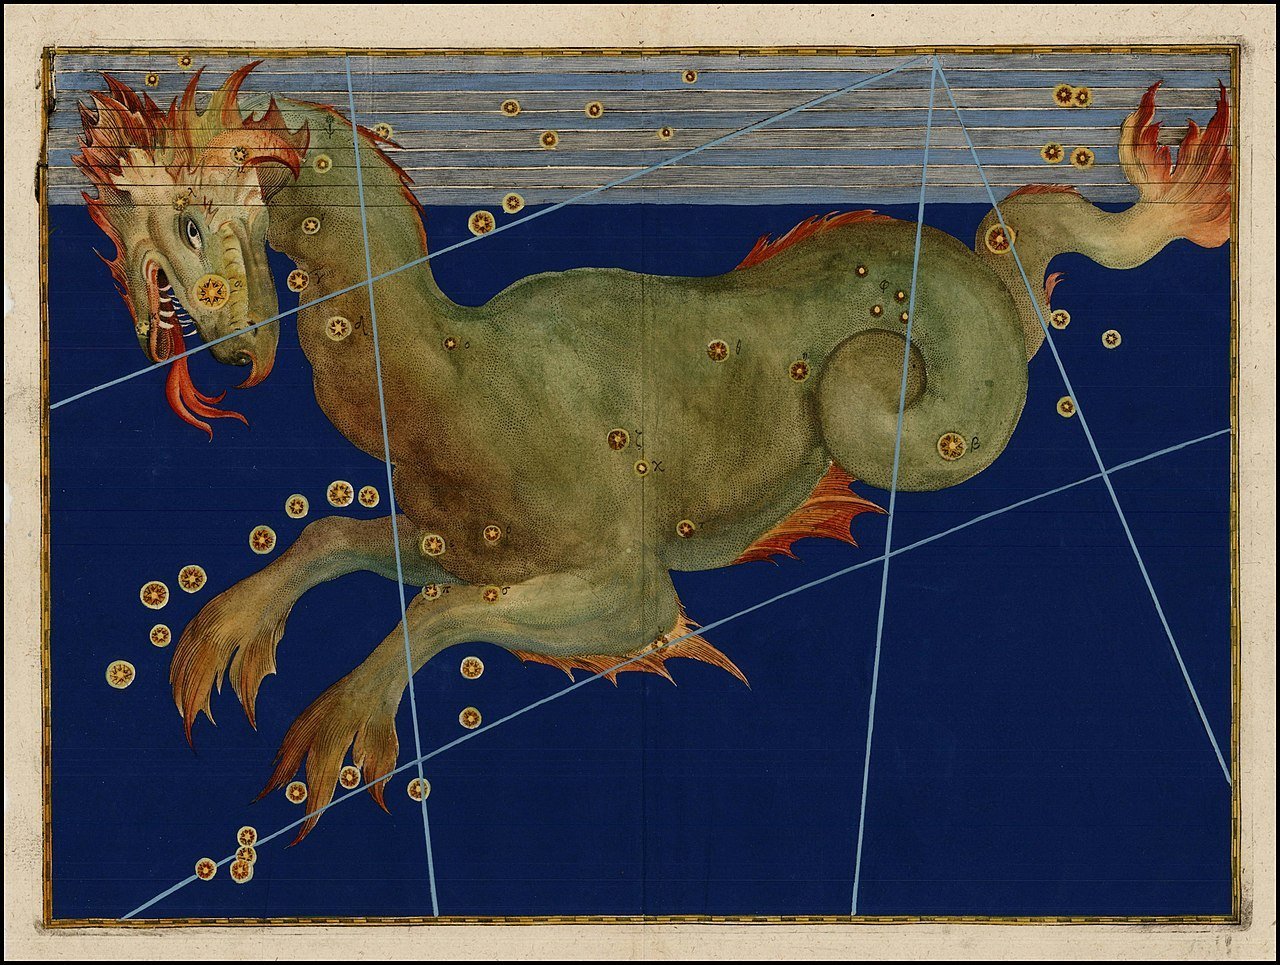 سیتوس: یک هیولای دریایی نجومی یونانی